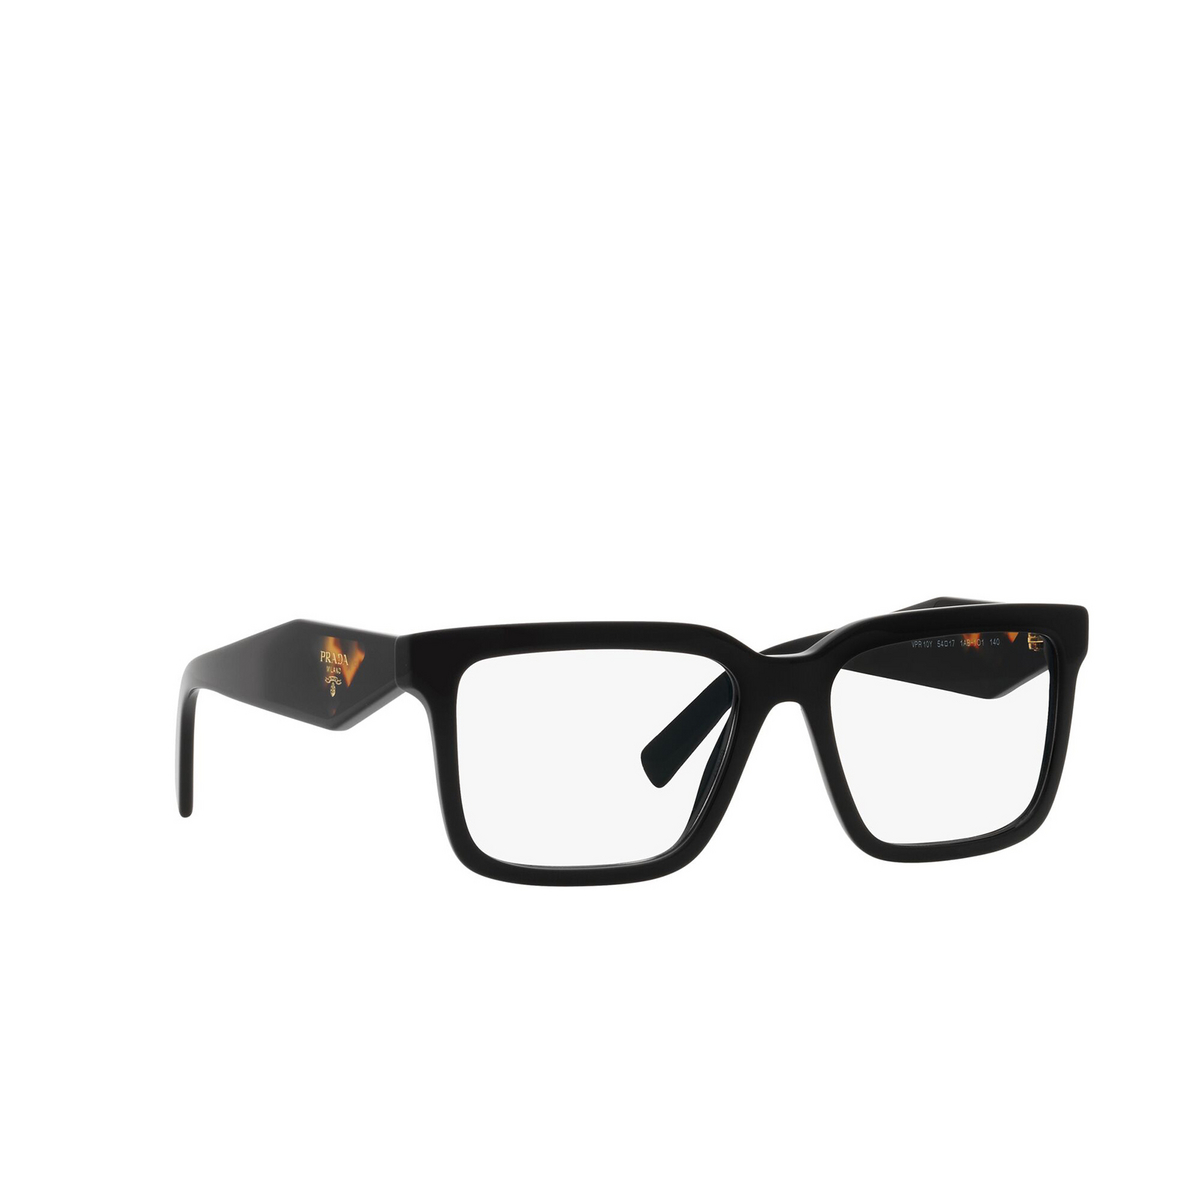 Prada® Square Eyeglasses: PR 10YV color Black 1AB1O1 - three-quarters view.